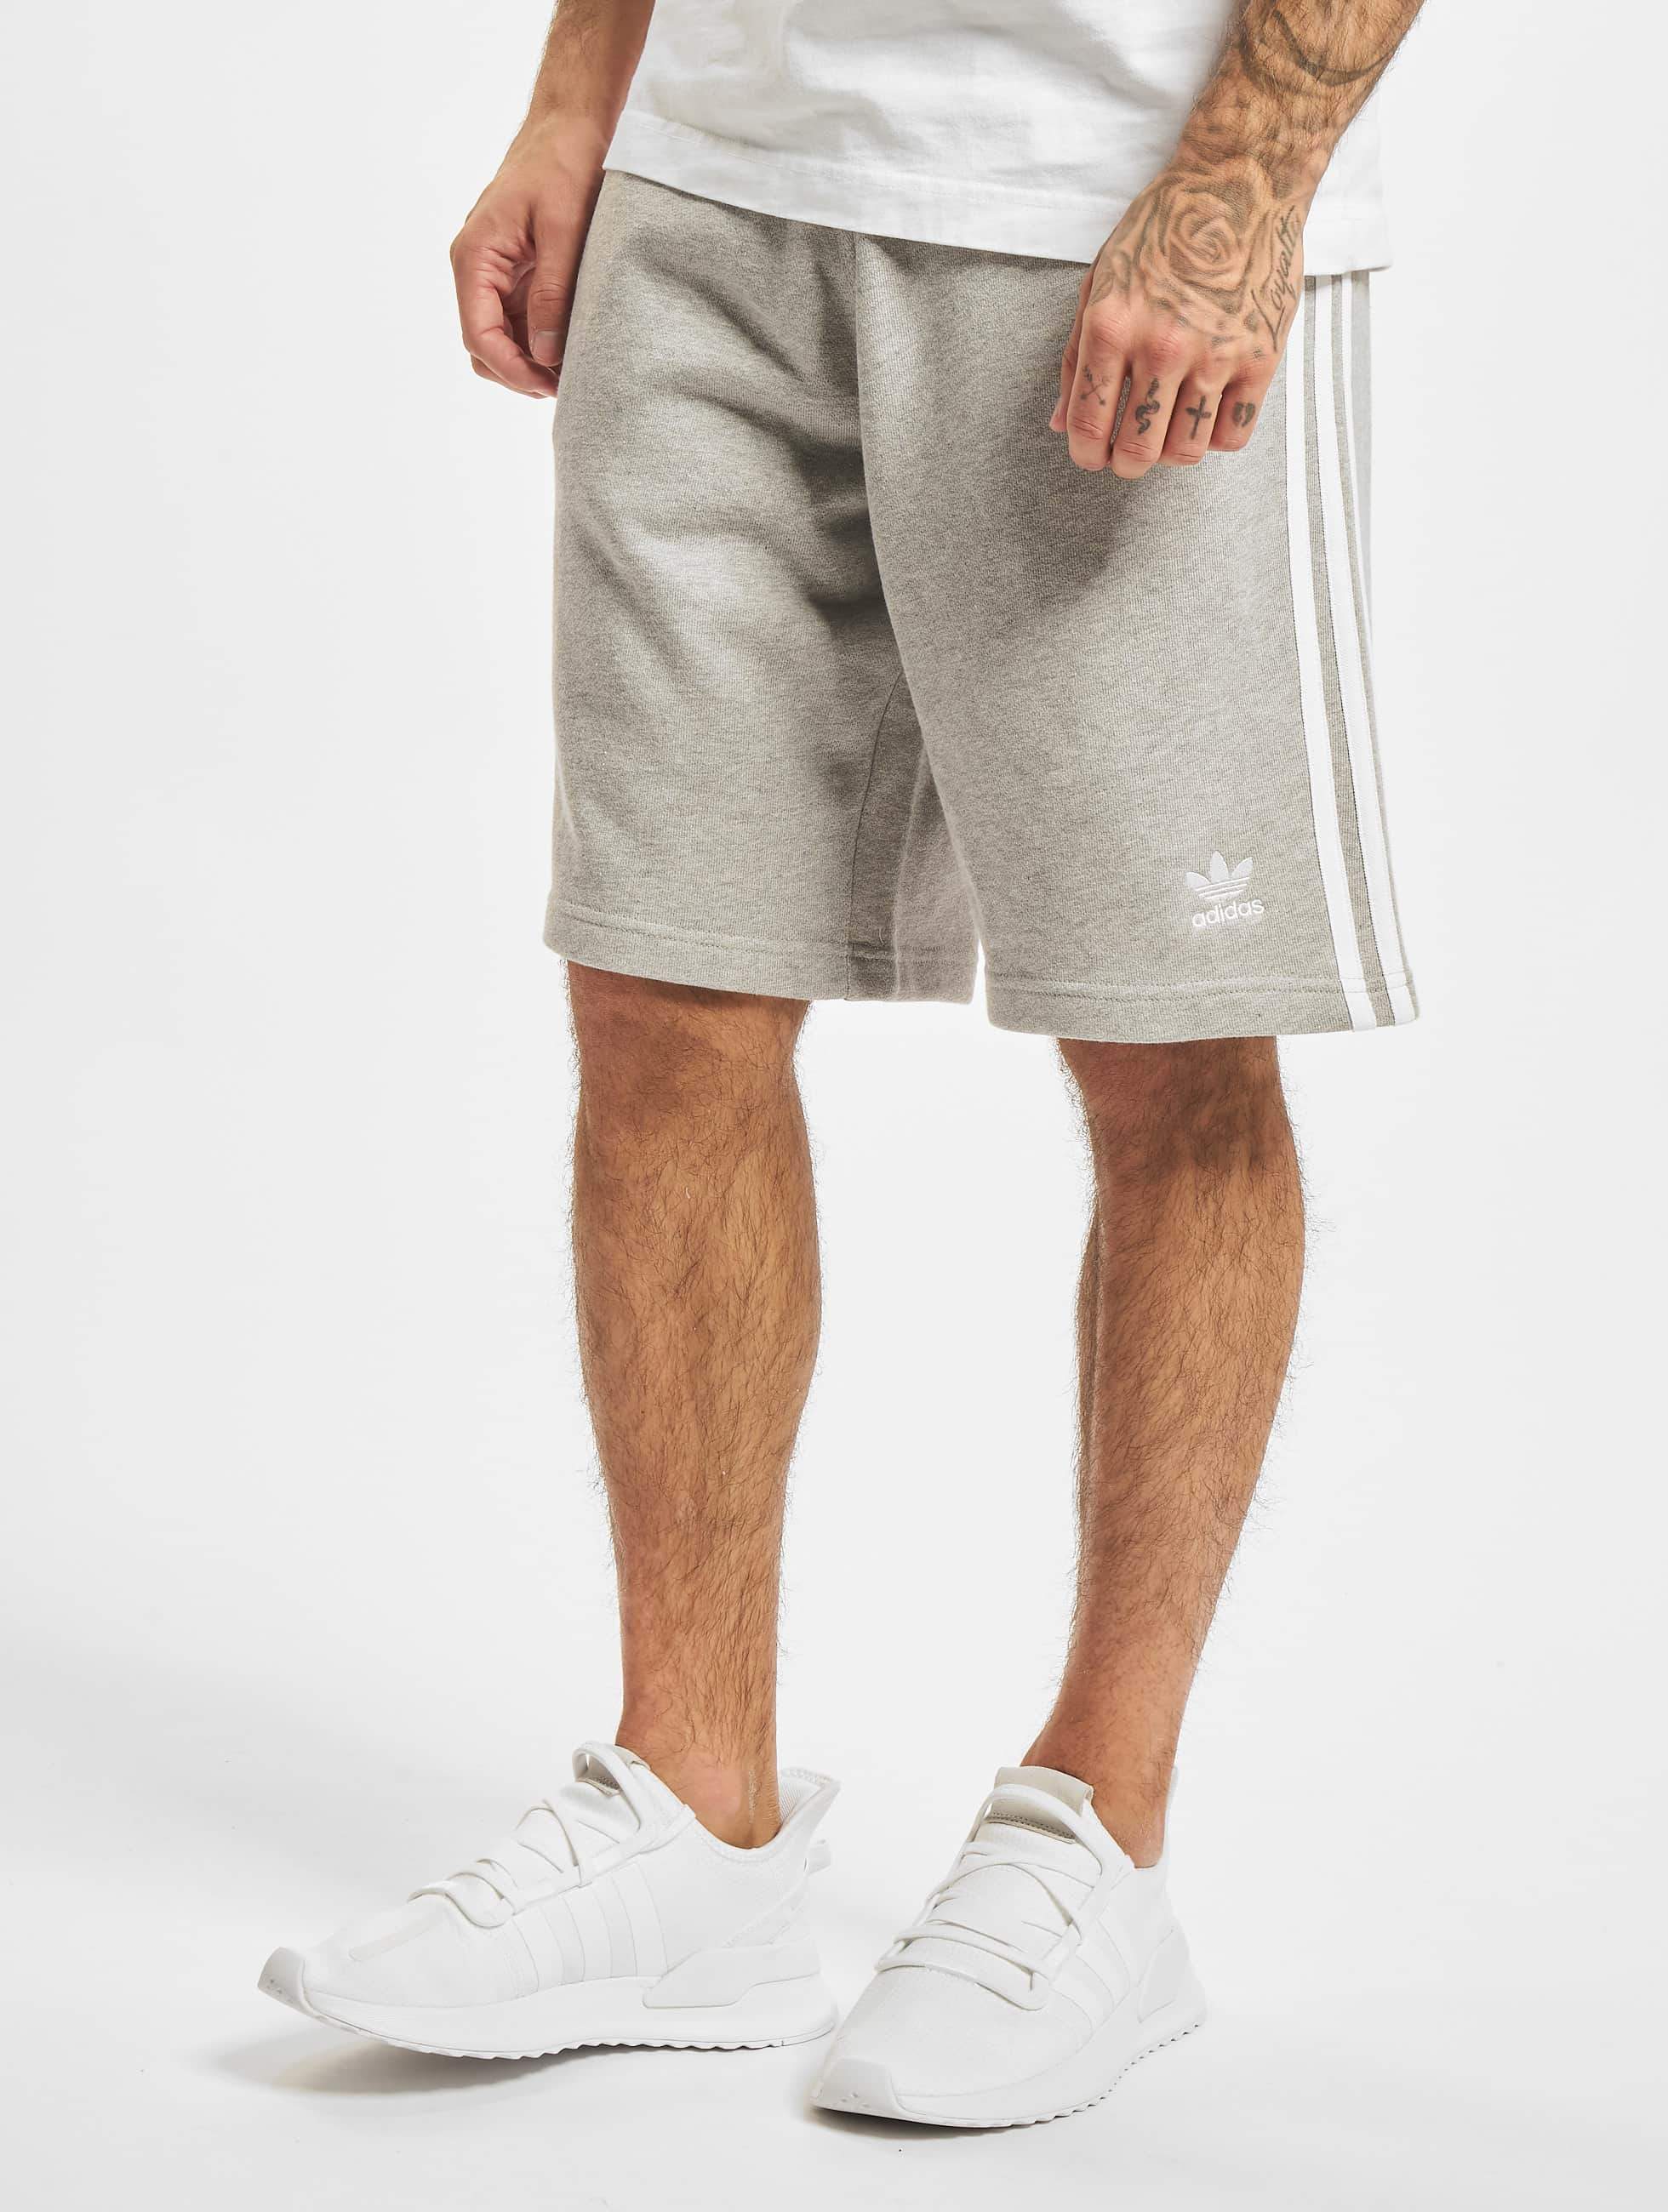 Originals Bukser / Shorts 3-Stripe i grå 500115